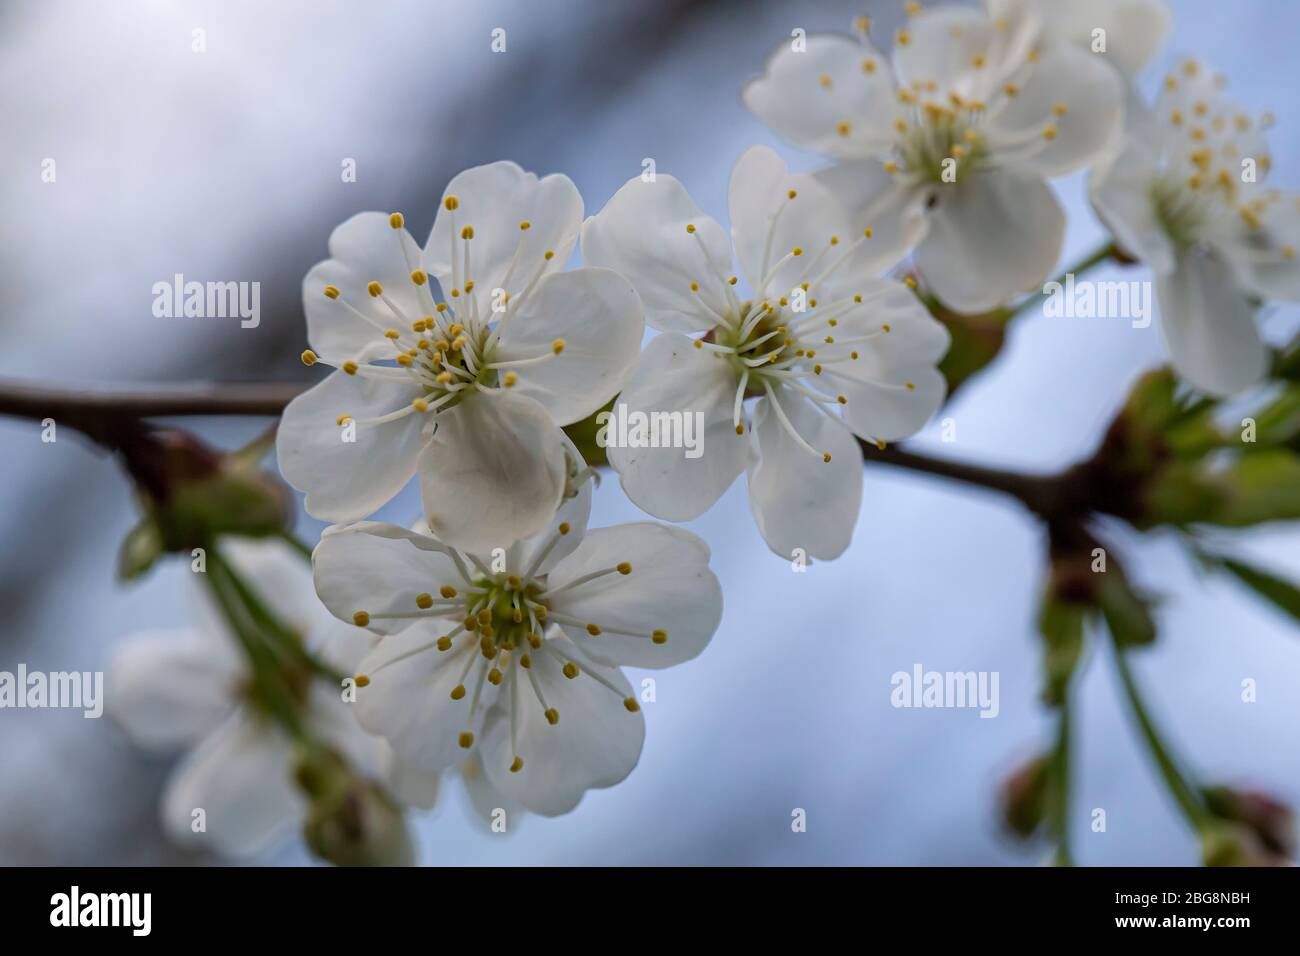 Schöne weiße Blumen eines Pflaumenbaumes, Prunus domestica, gegen einen blauen Himmel, am Abend. Makro. Stockfoto